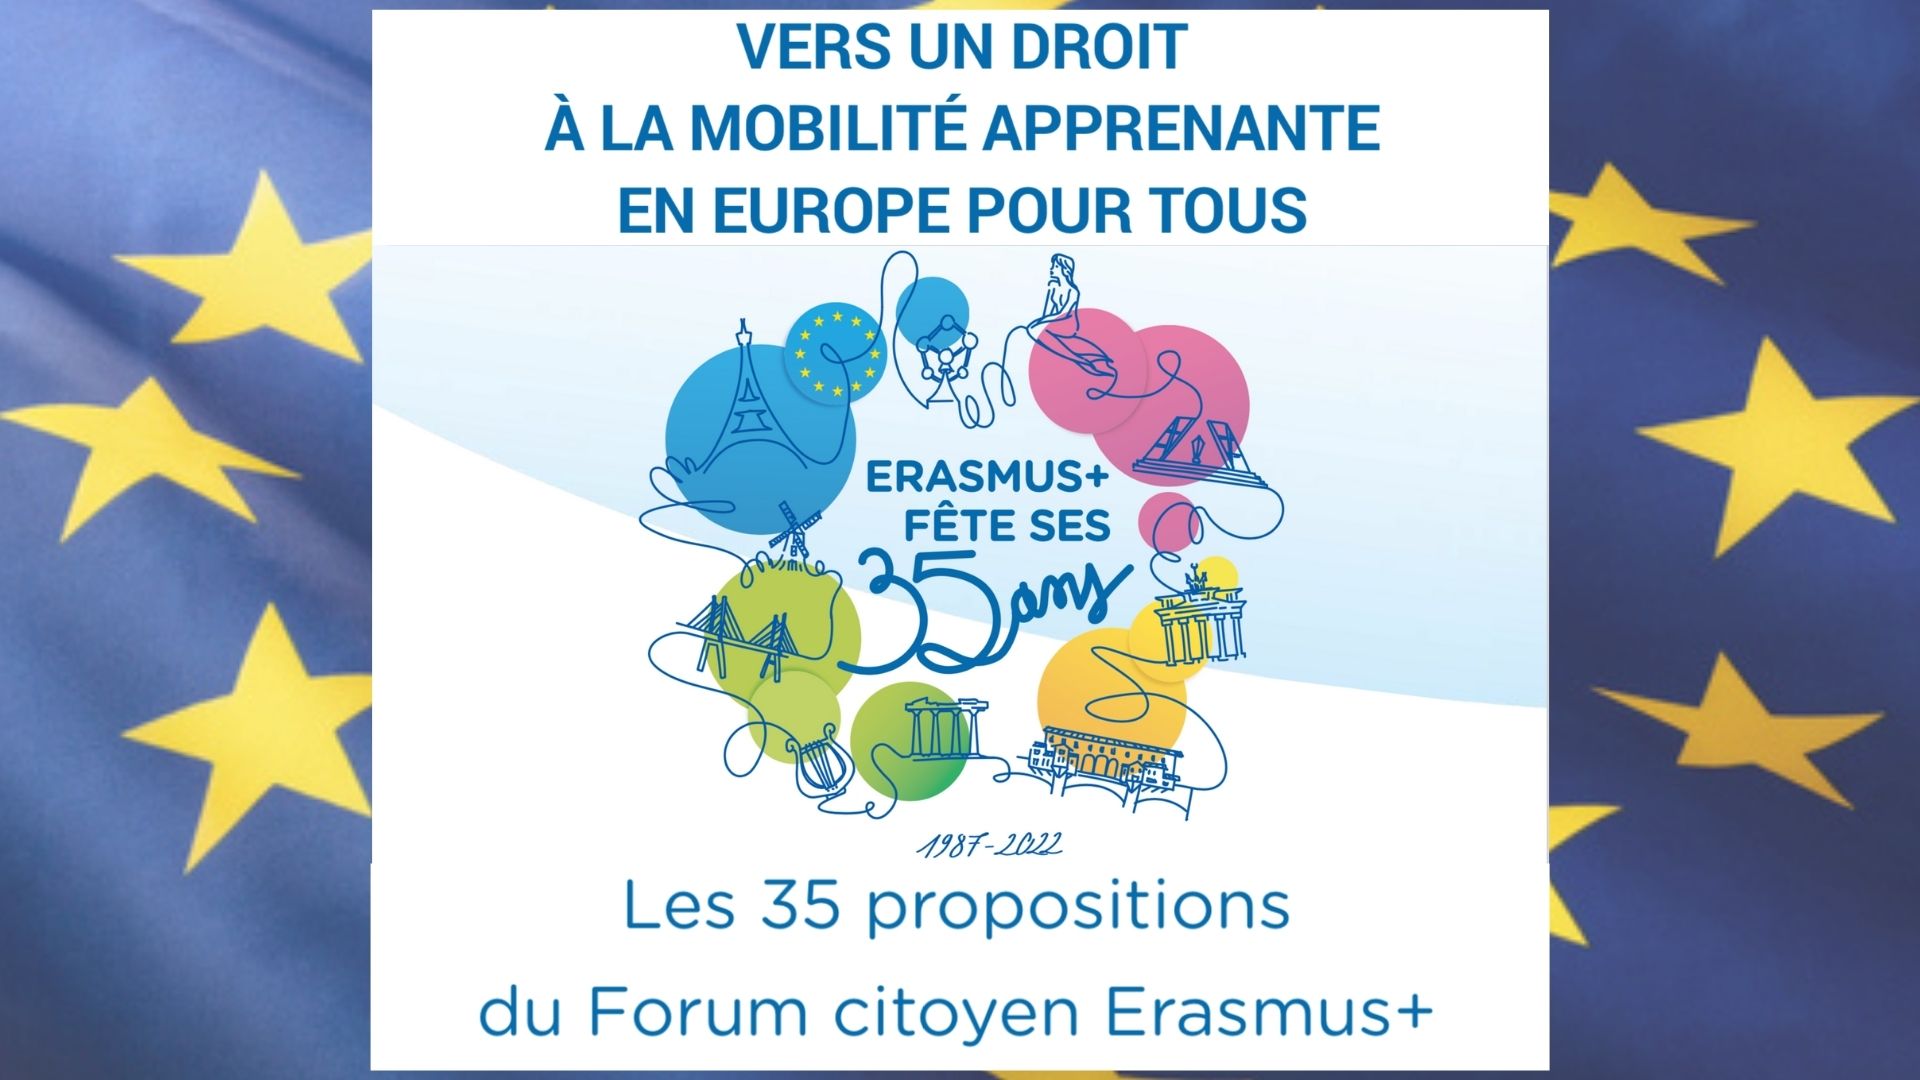 Publication Erasmus + : “Vers un droit à la mobilité apprenante en Europe pour tous“